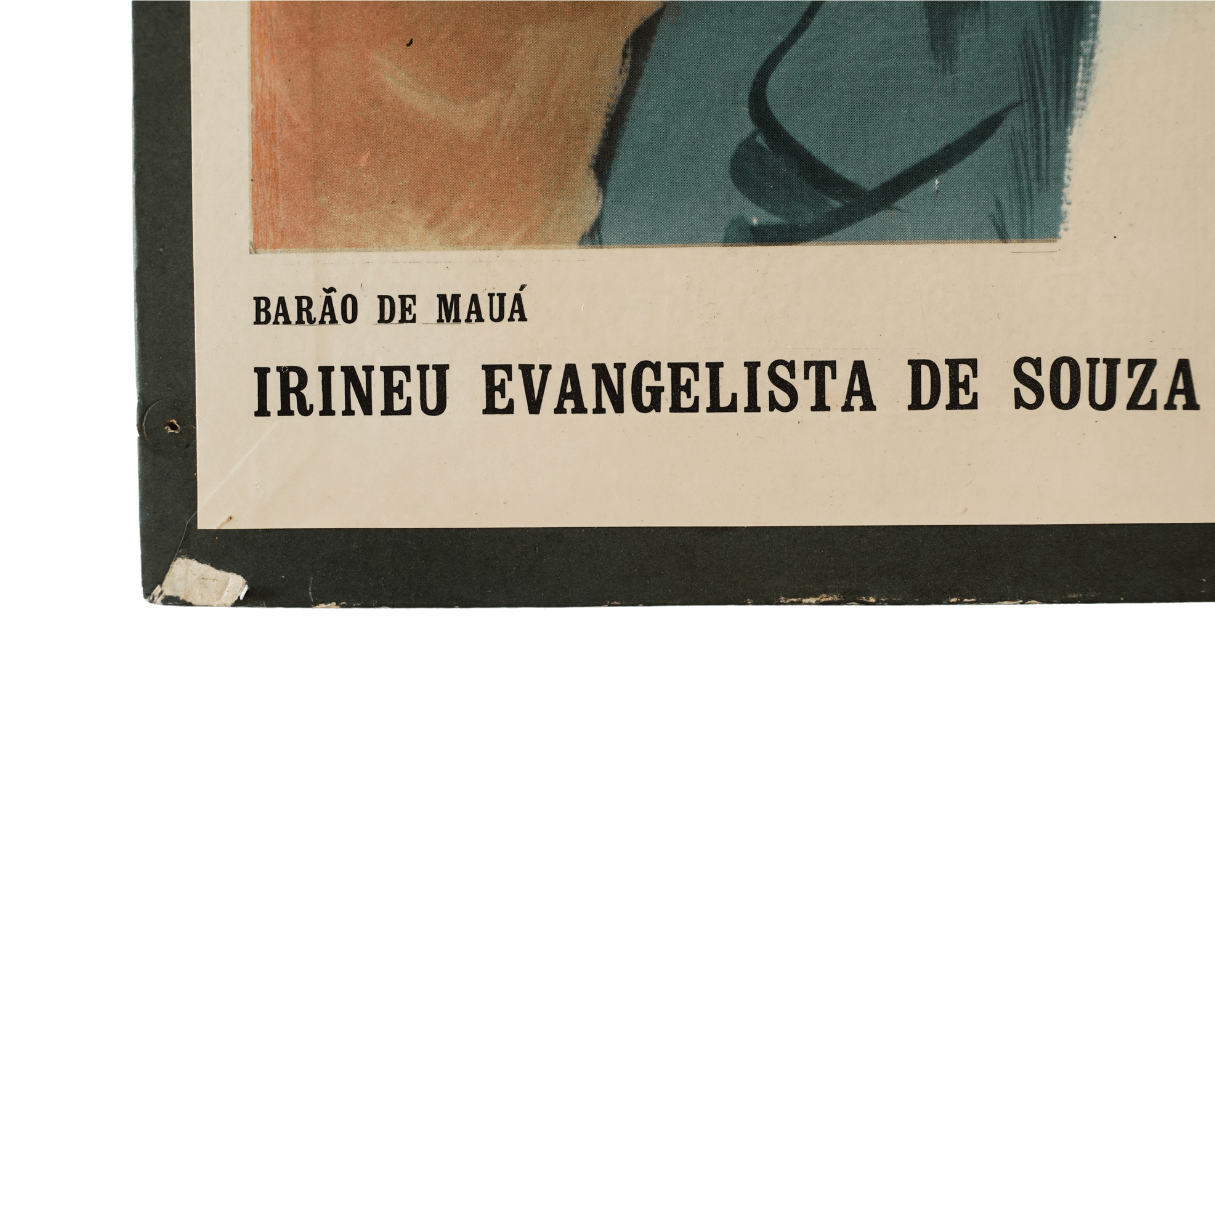 Placa Decorativa Barão de Mauá de 1970